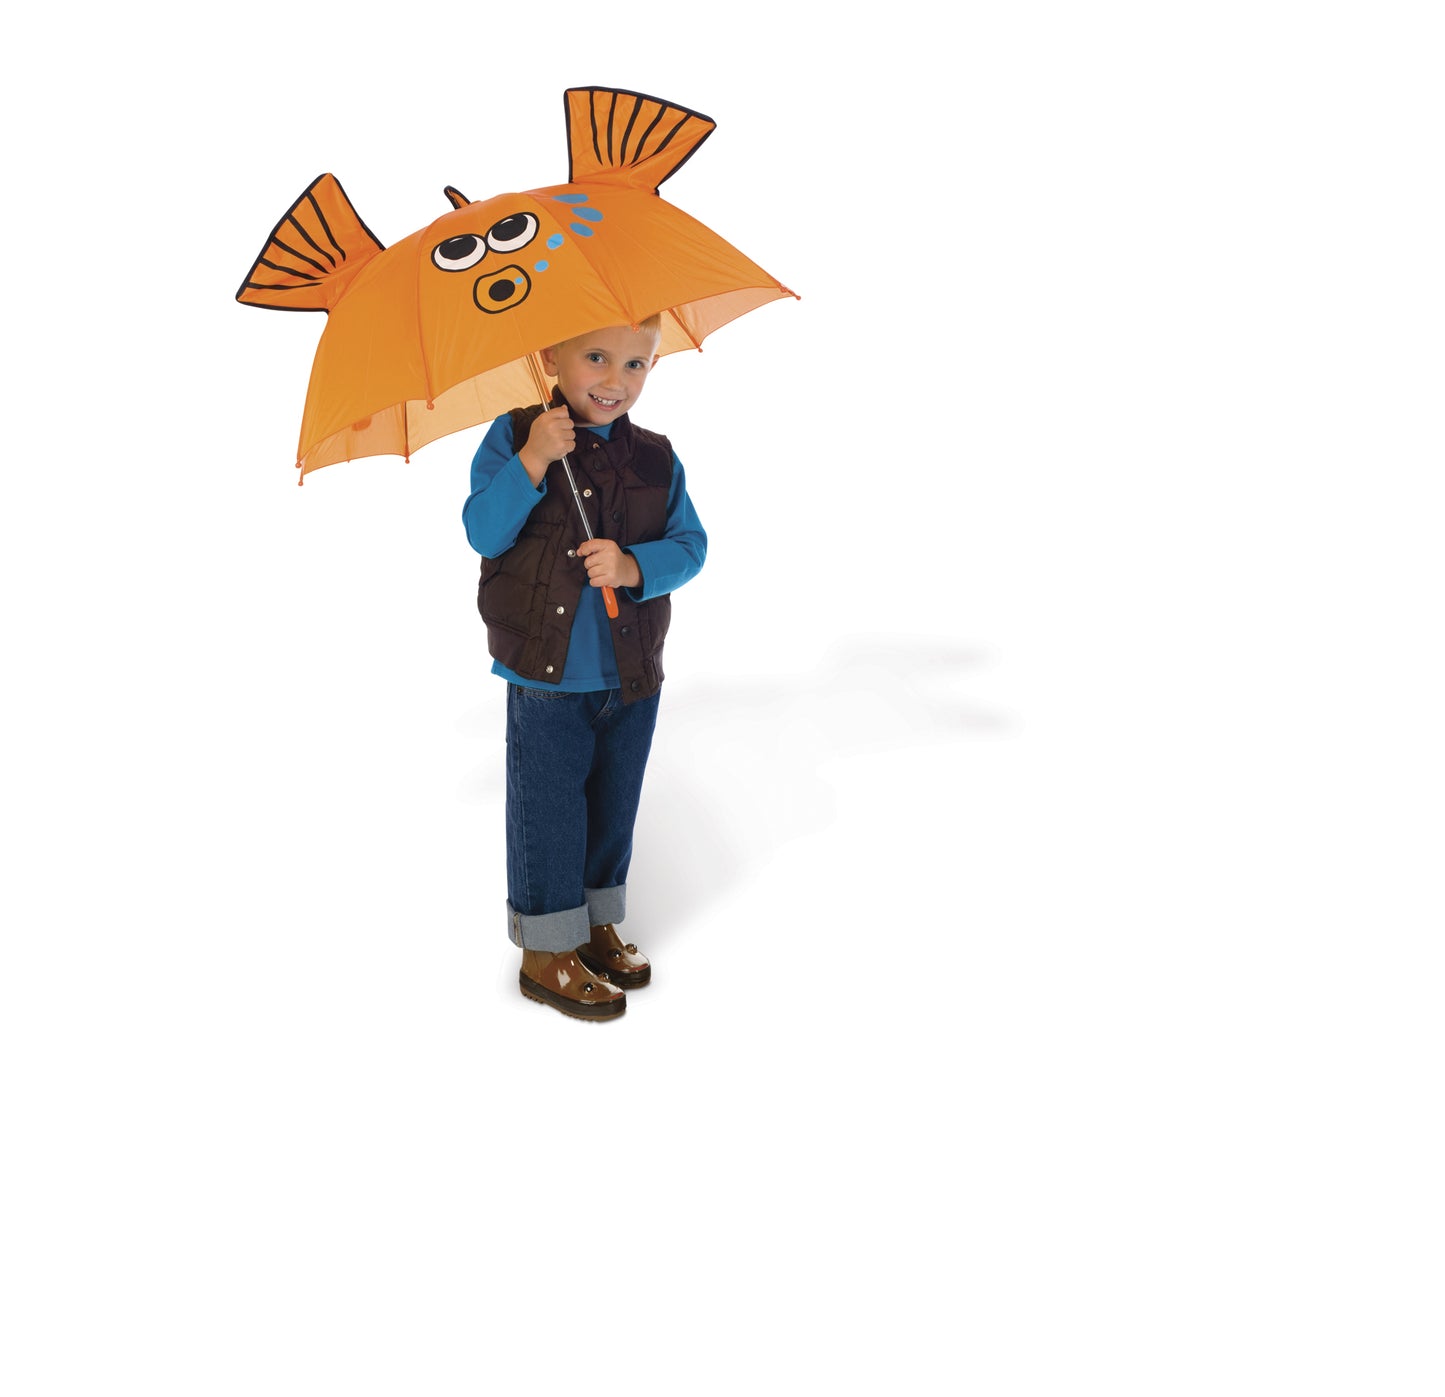 Toysmith Umbrella Asst